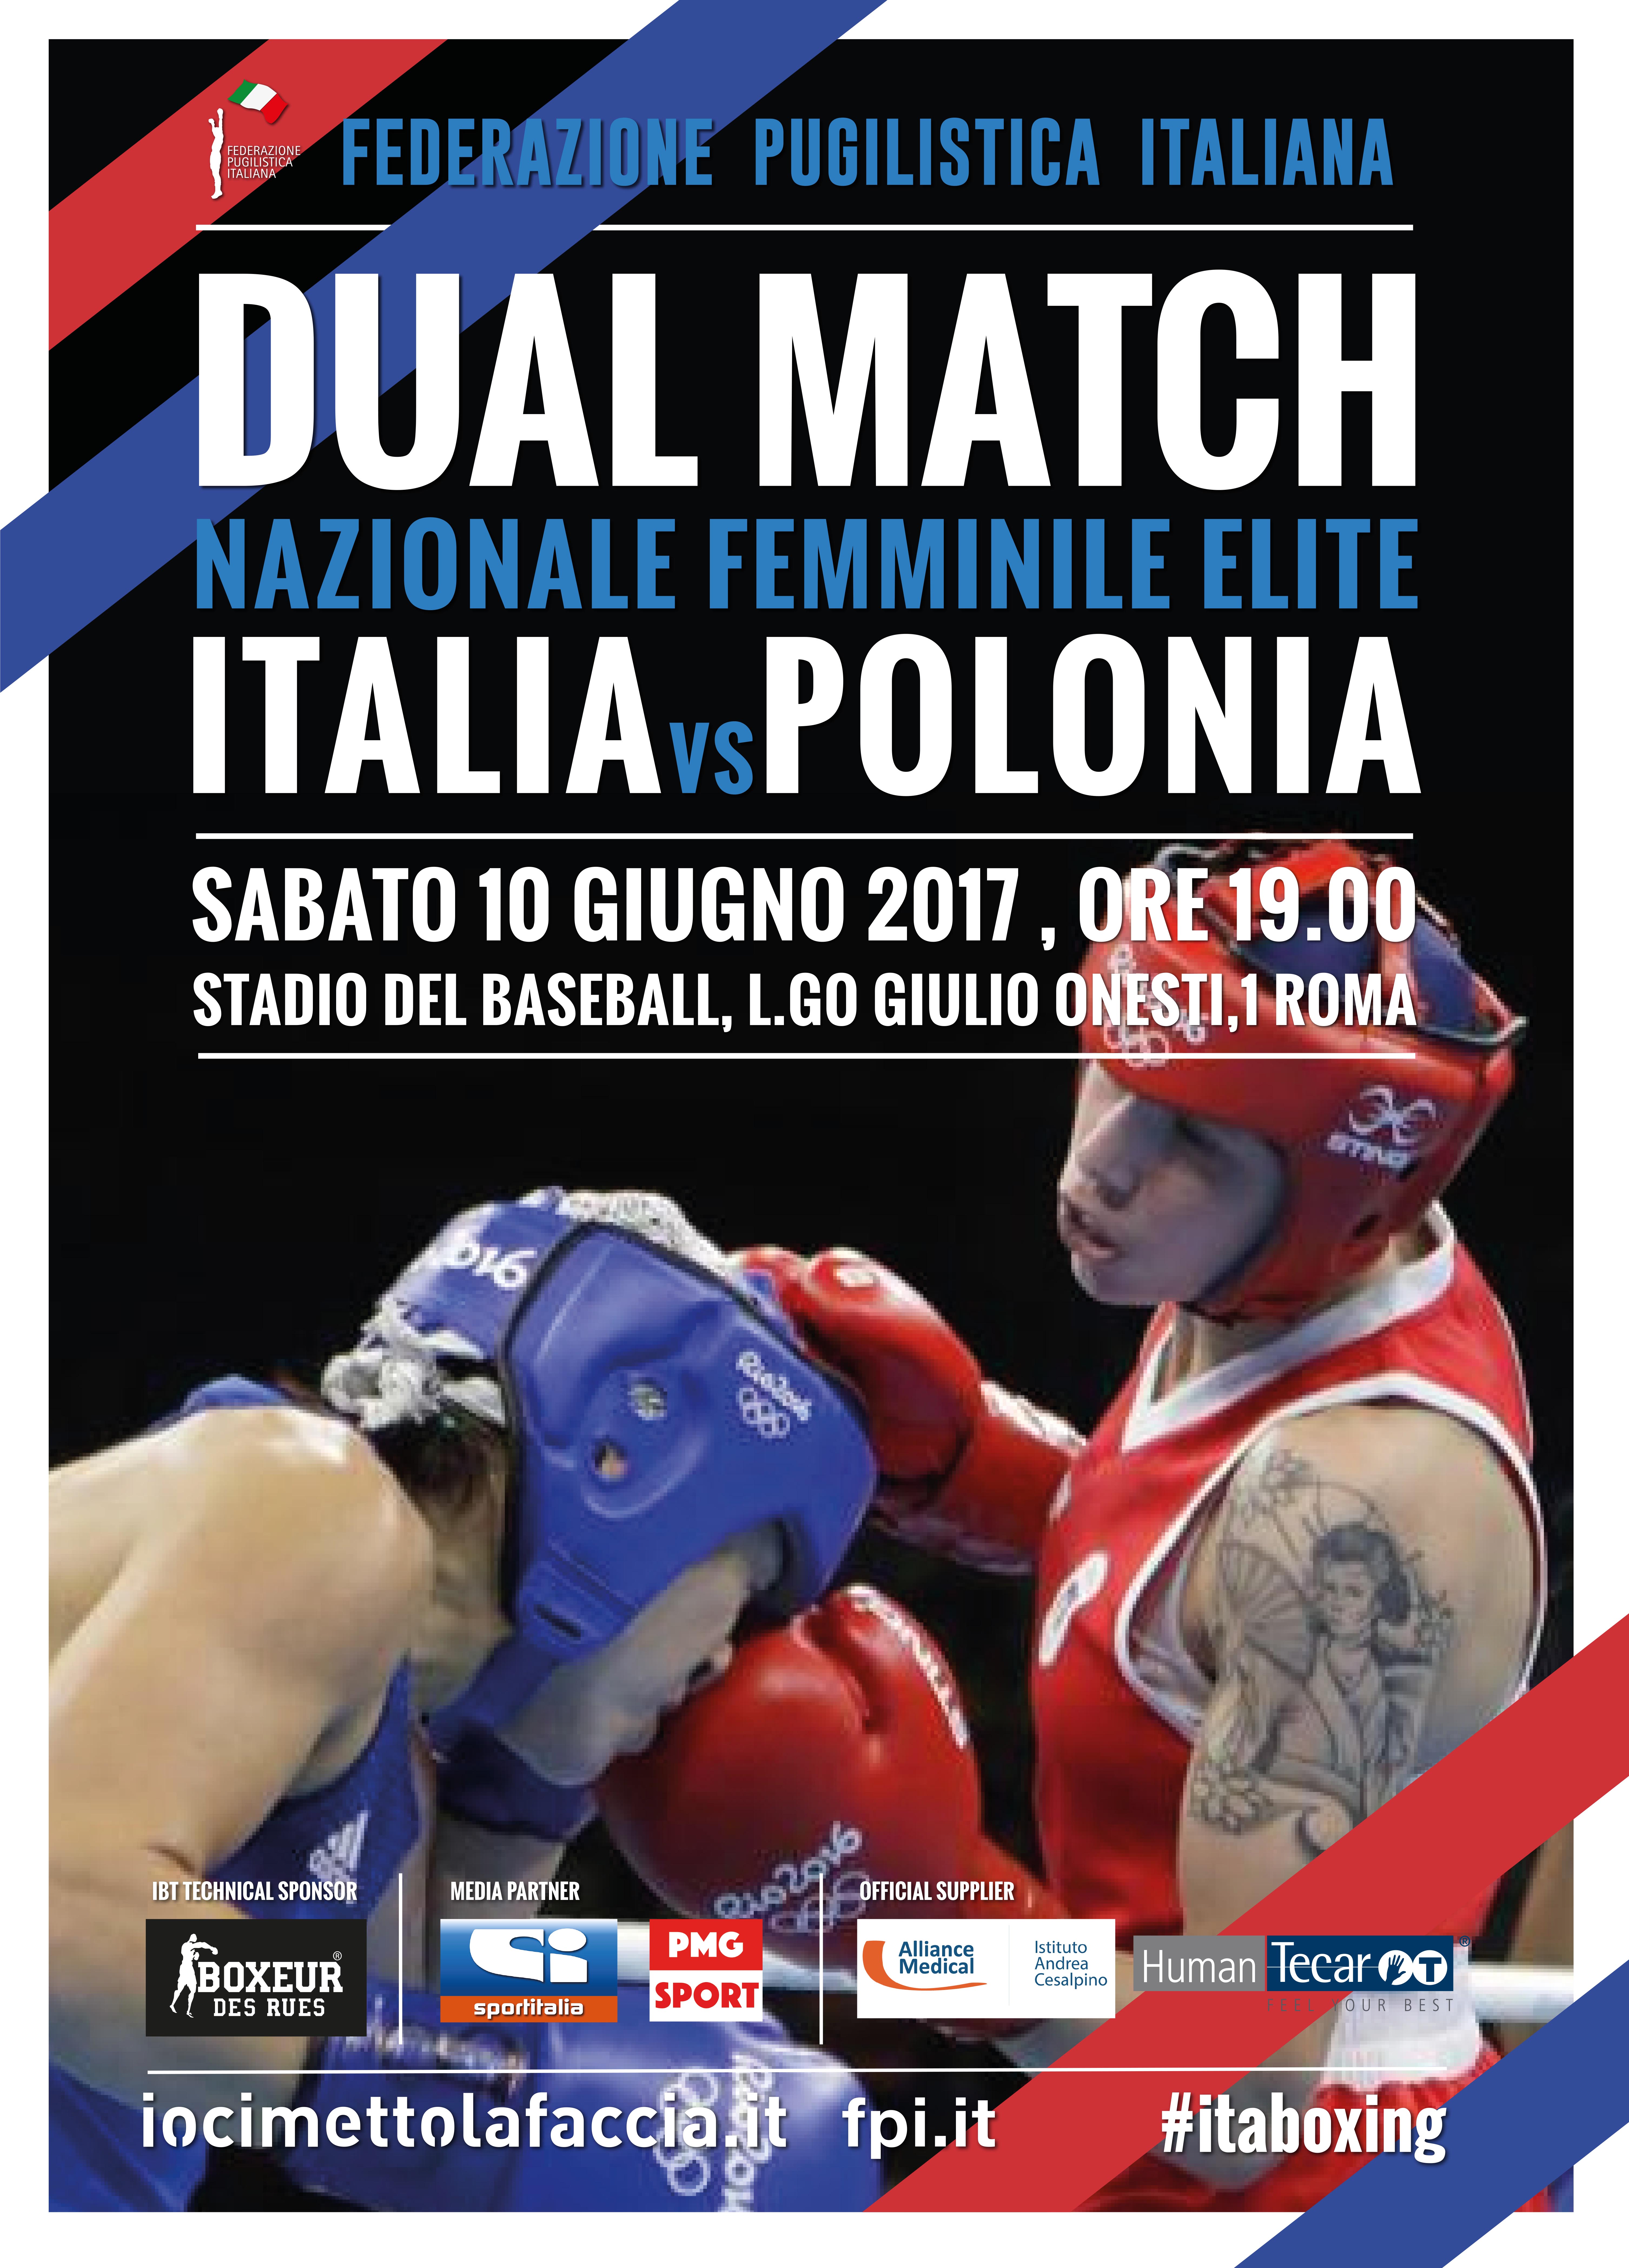 Sabato 10 Giugno a Roma prima il Dual Match Femminile Italia Polonia e Poi la Sfida Bevilacqua vs Lezzi per il Titolo Italiano Superwelter - INFO TICKET